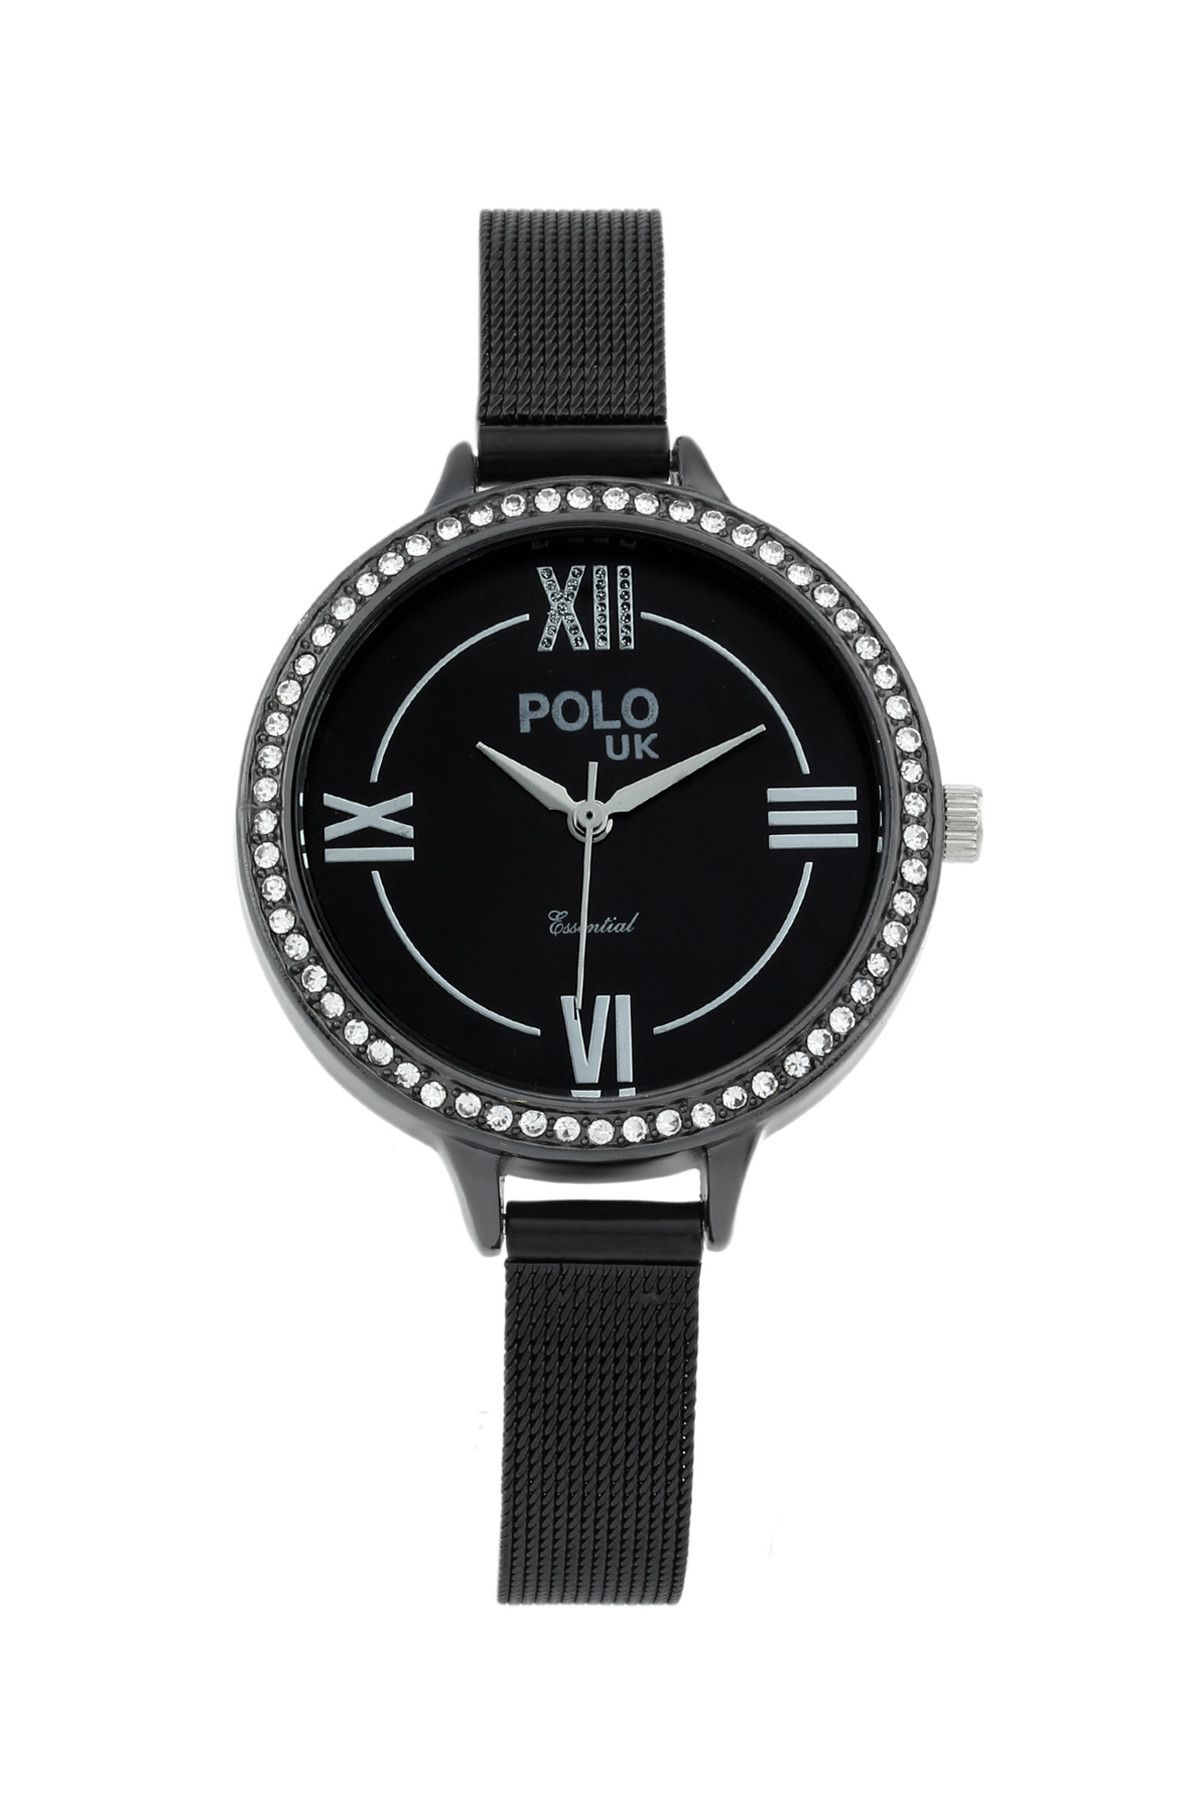 Polo U.K. Kadın Kol Saati POLOUK 1227